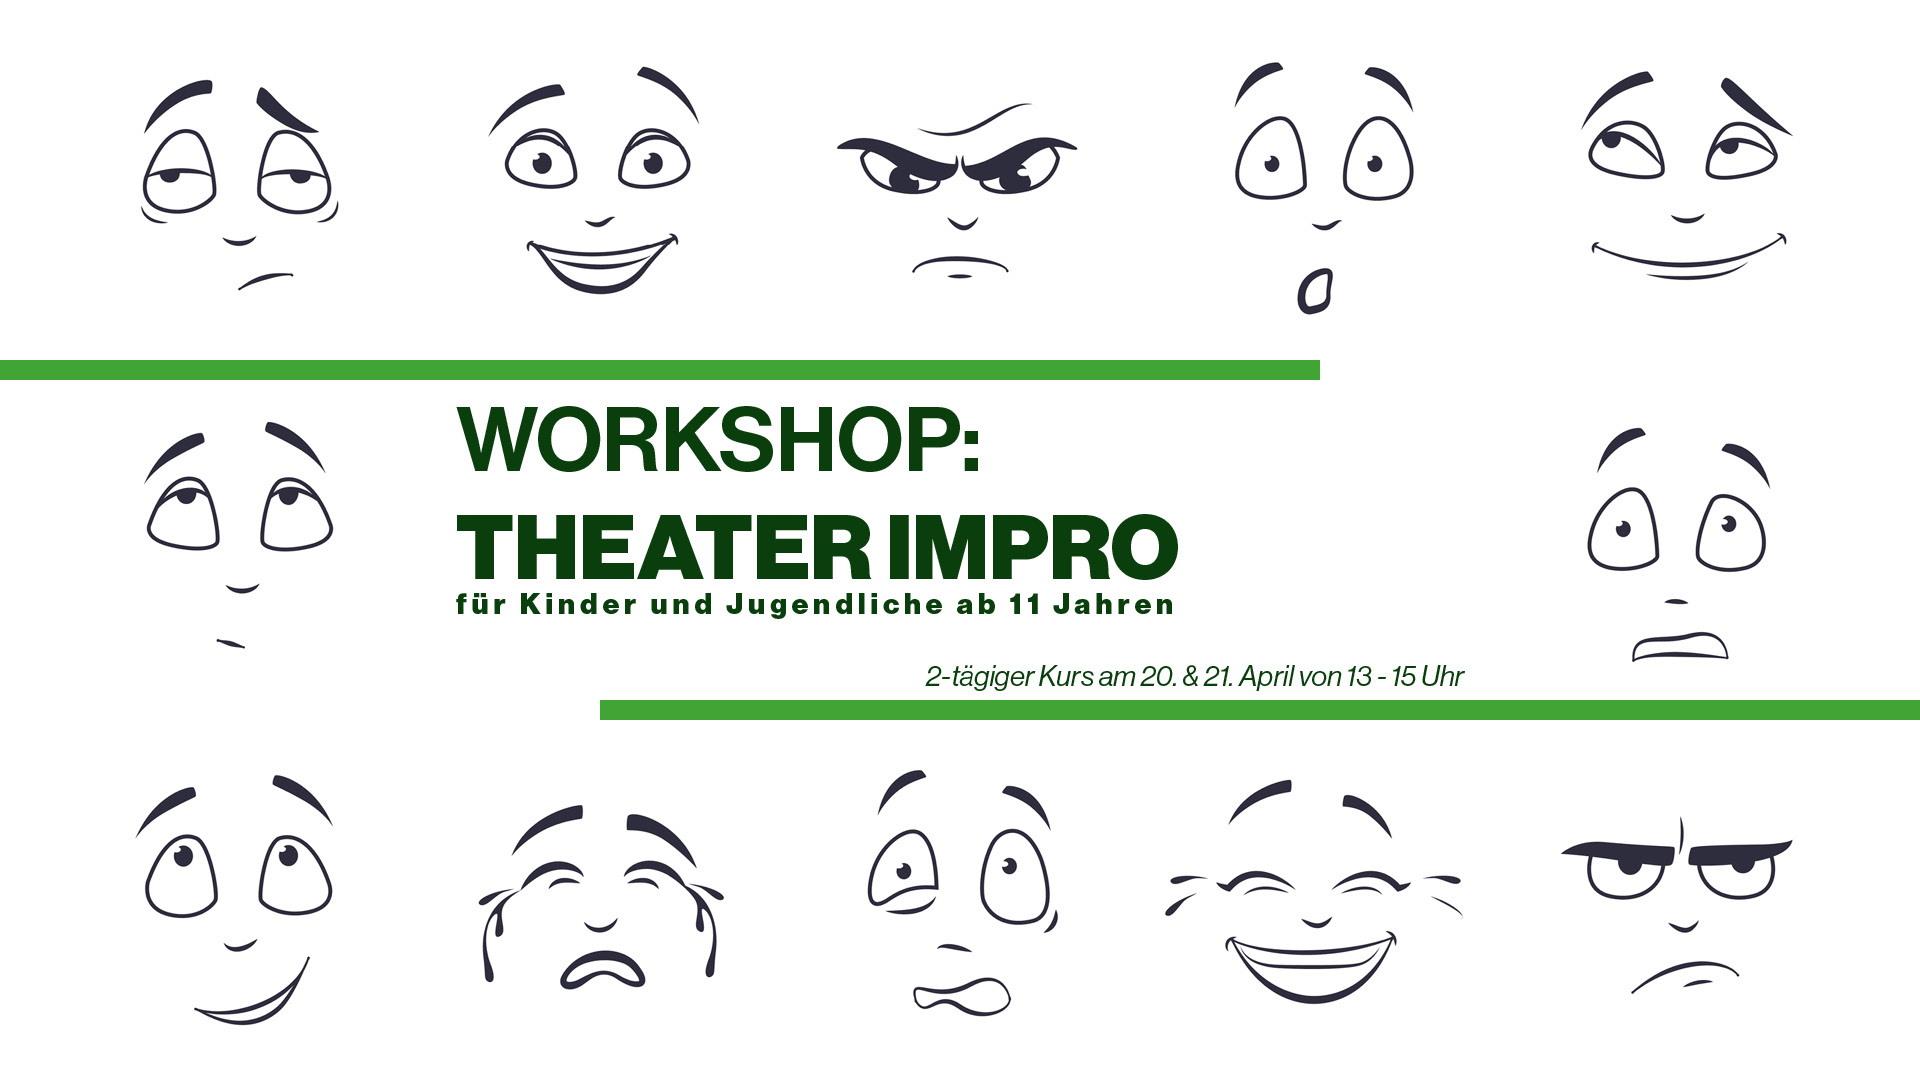 2-tägiger Theater-Impro-Workshop für Kinder und Jugendliche ab 11 Jahren 